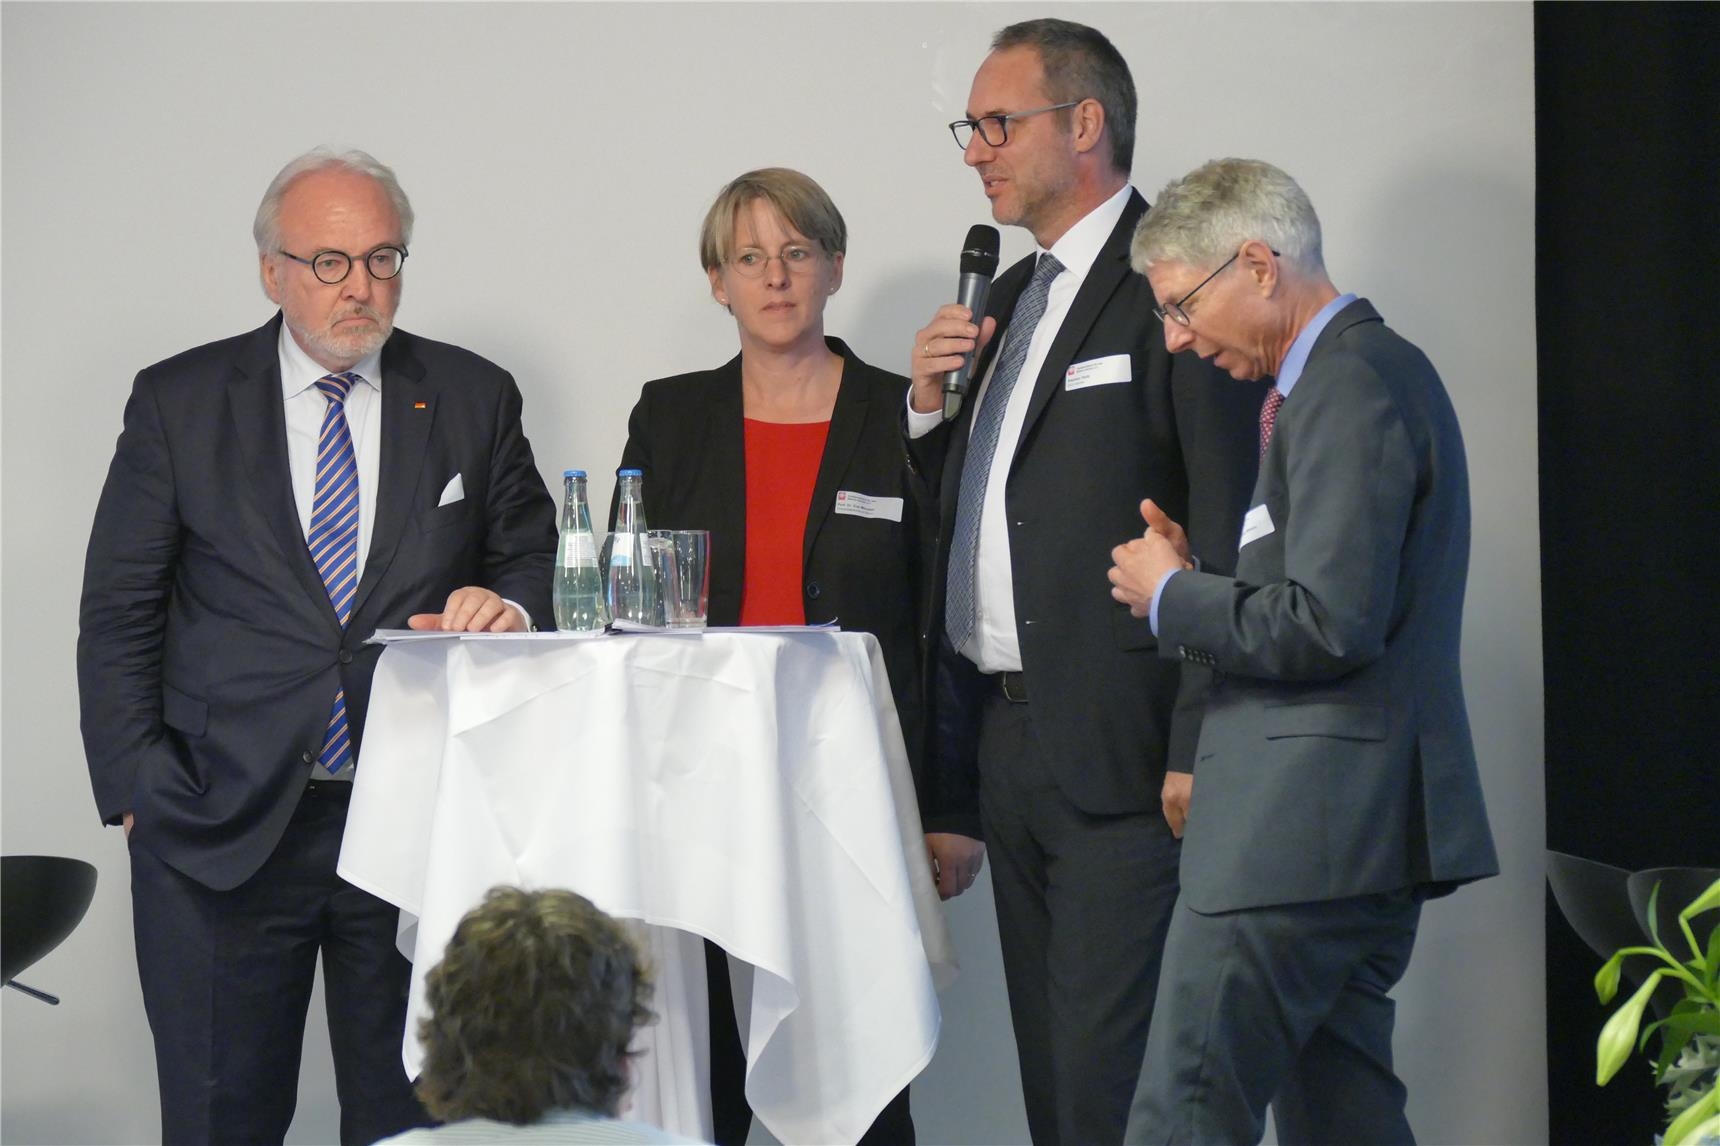 Diskussionsrunde am Stehtisch auf Podium (DiCV Aachen)